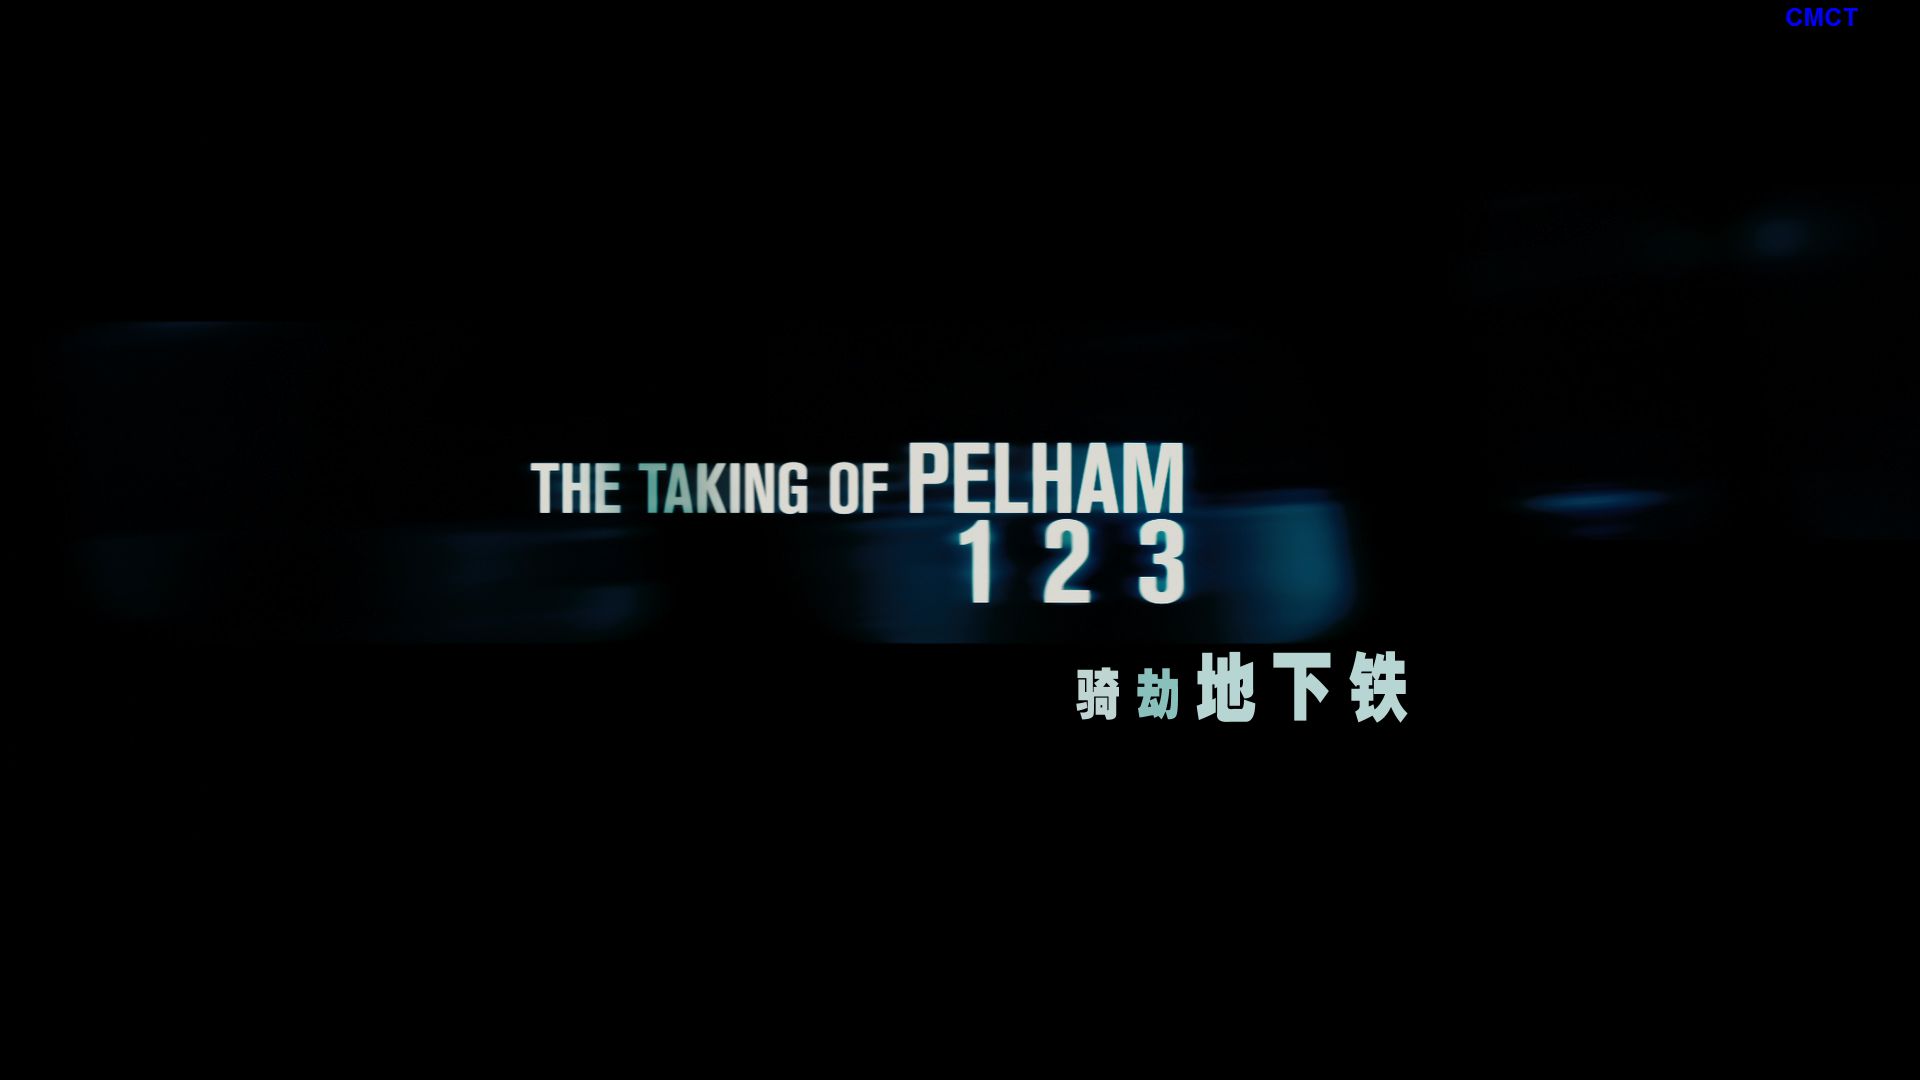 地铁惊魂[原盘DIY] [国语] [简/繁/双语特效/花絮字幕] The.Taking.of.Pelham.123.2009.TW.Blu-ray.1080p.AVC.DTS-HD.MA5.1-CMCT    [35.81 GB]-2.png